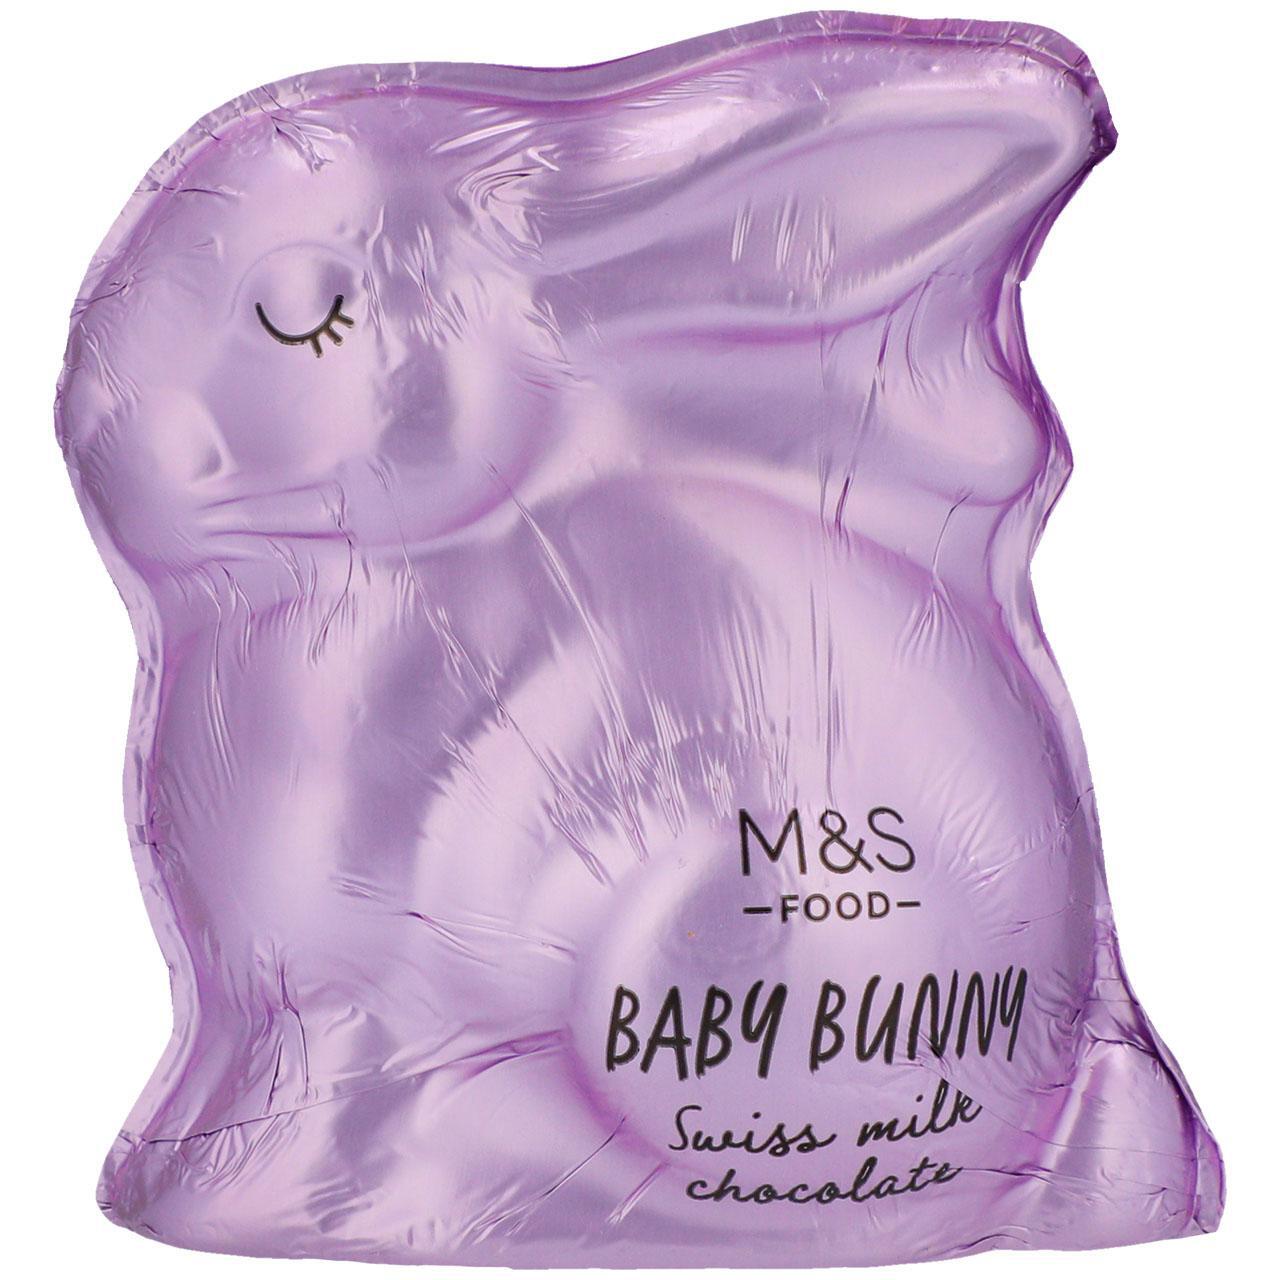 M&S Swiss Milk Chocolate Baby Bunny 100g